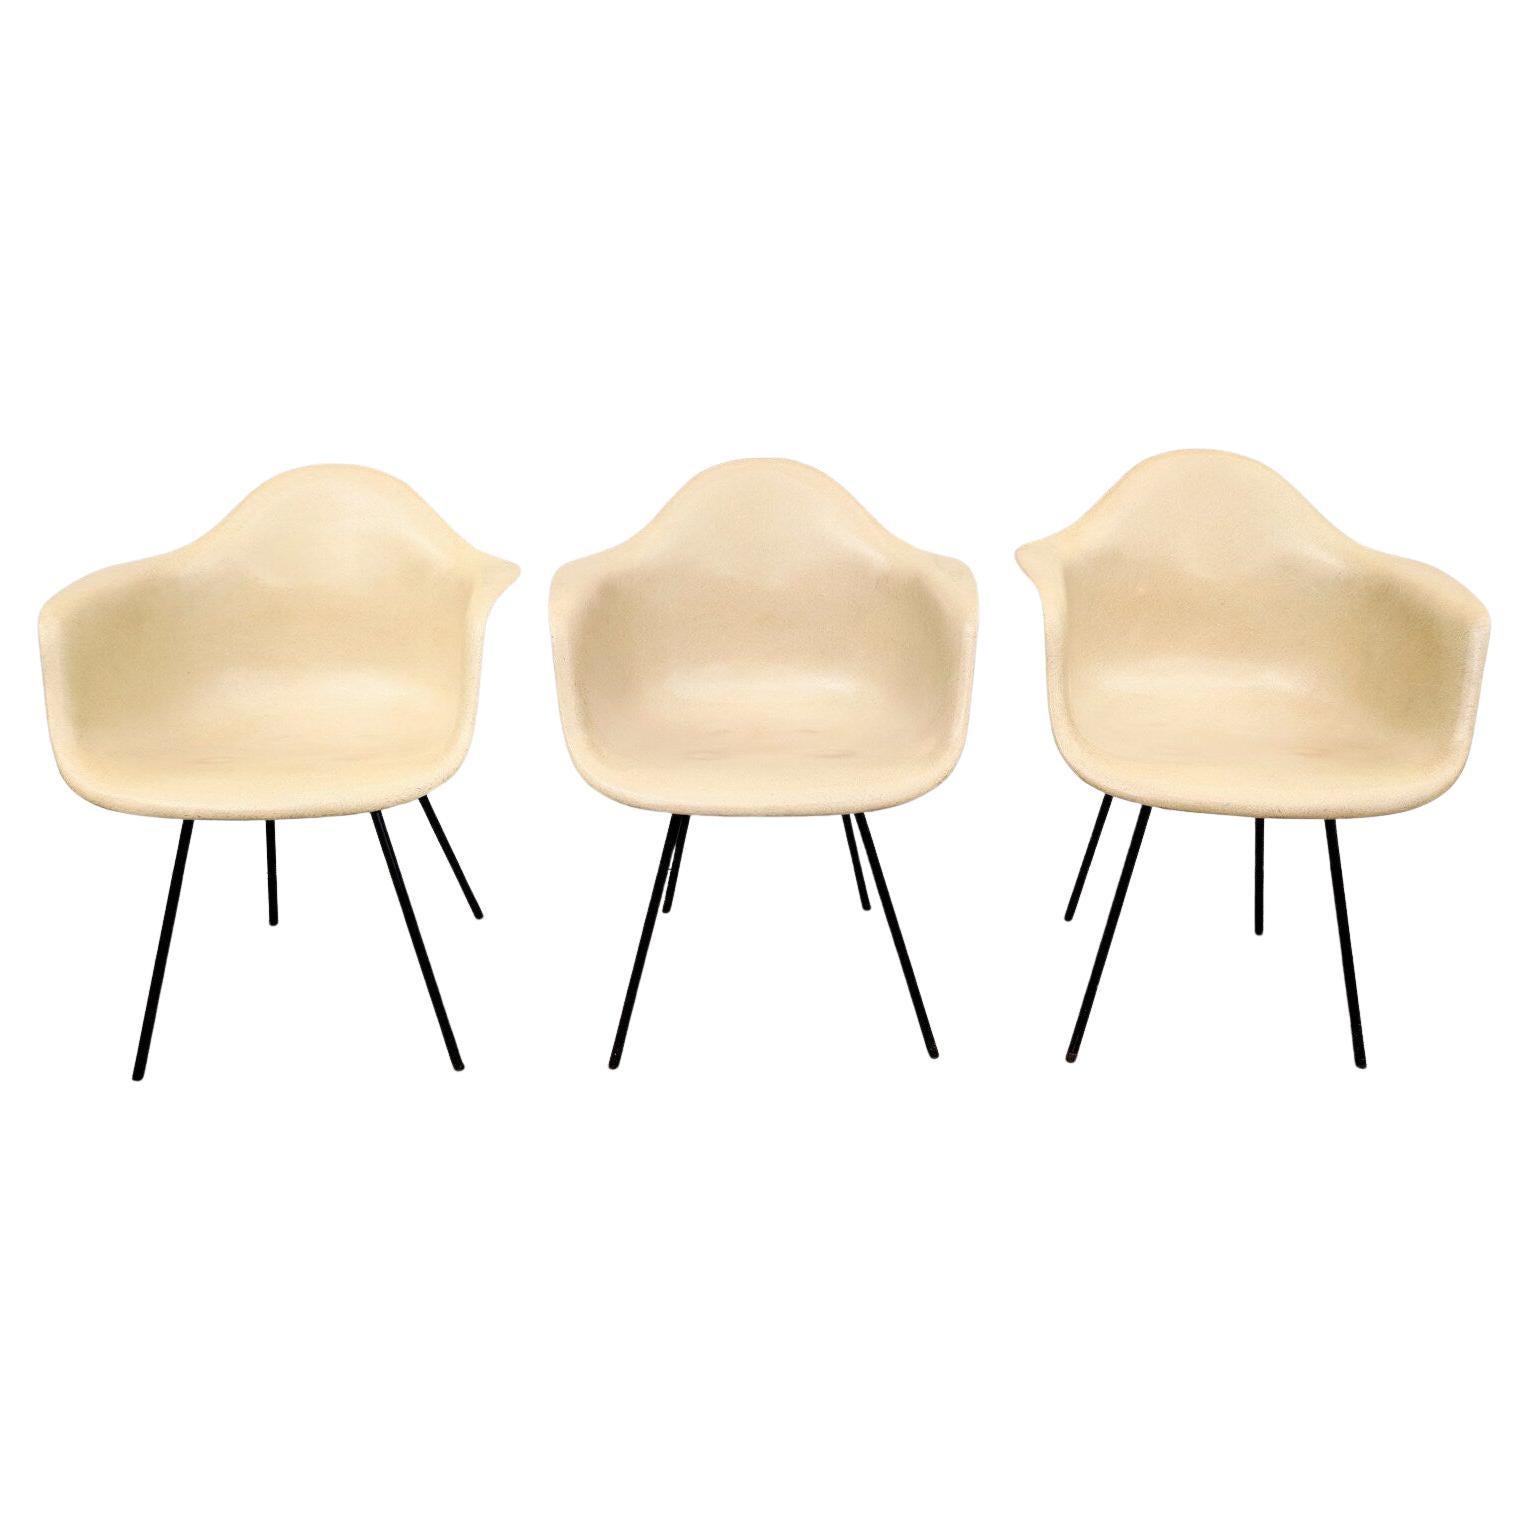 Mid Century Modern Early Eames DAX Armed Shell Chair

Fiberglas in gutem Zustand und strukturell gesund. Einige leichte Verfärbungen, aber insgesamt überdurchschnittlichen Vintage-Zustand.

Zusätzliche Informationen:
MATERIALIEN: Fiberglas,